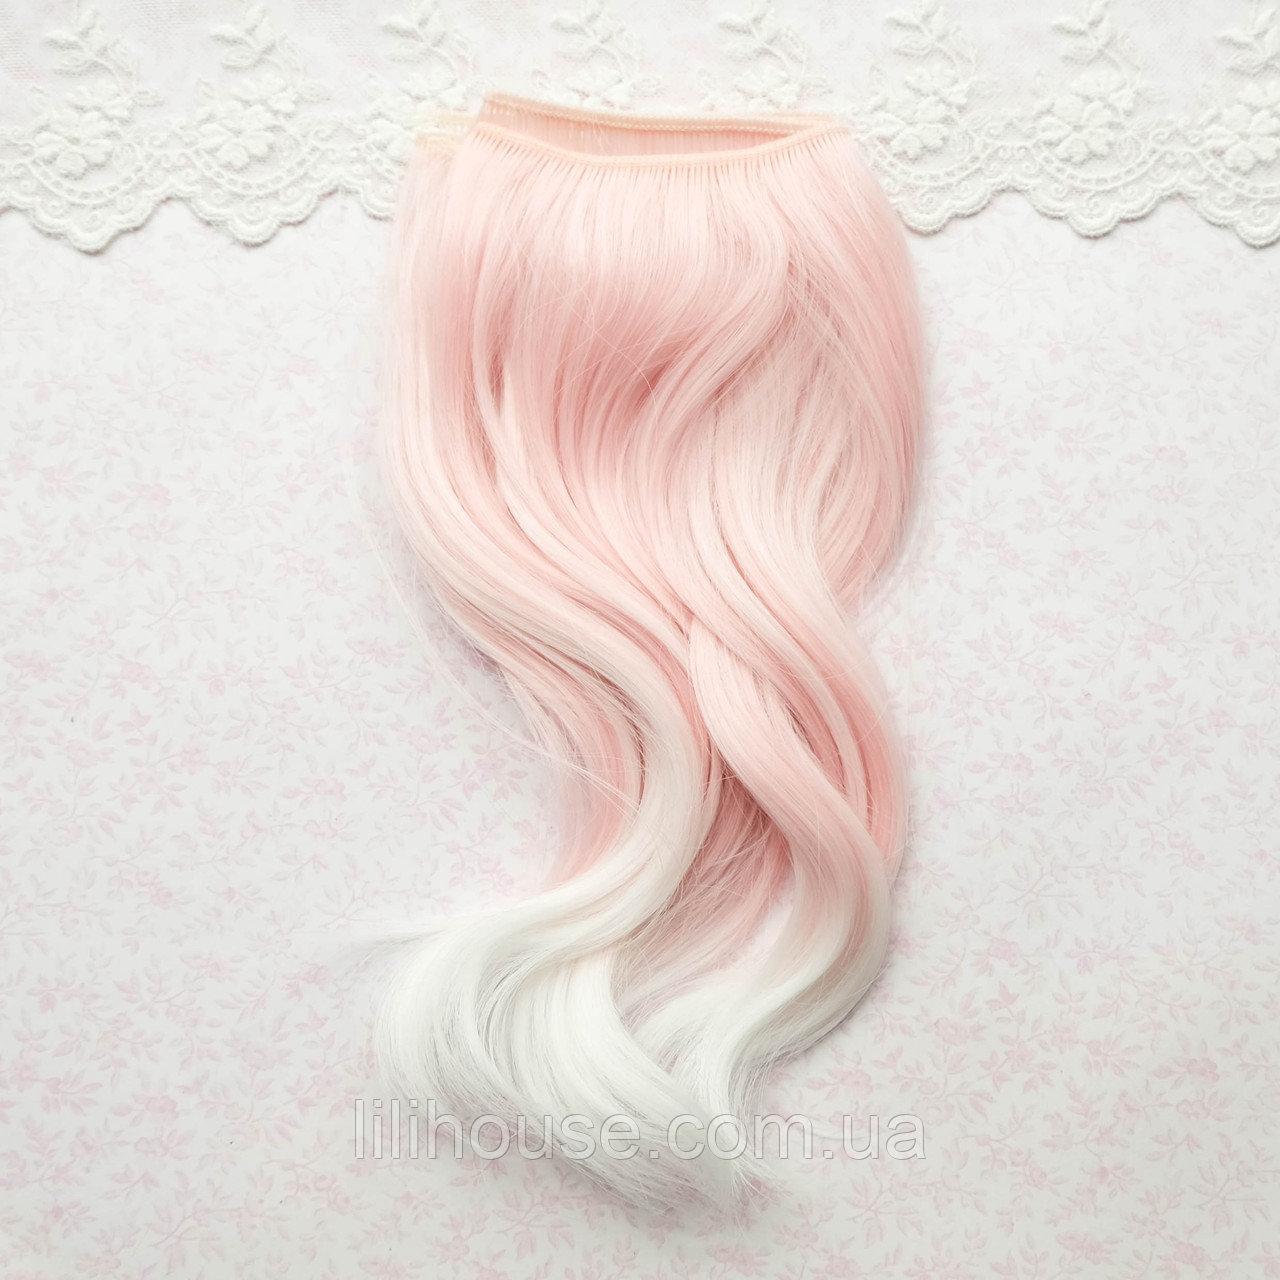 Волосы для кукол Крупная Волна 25 см омбре розовые с белым